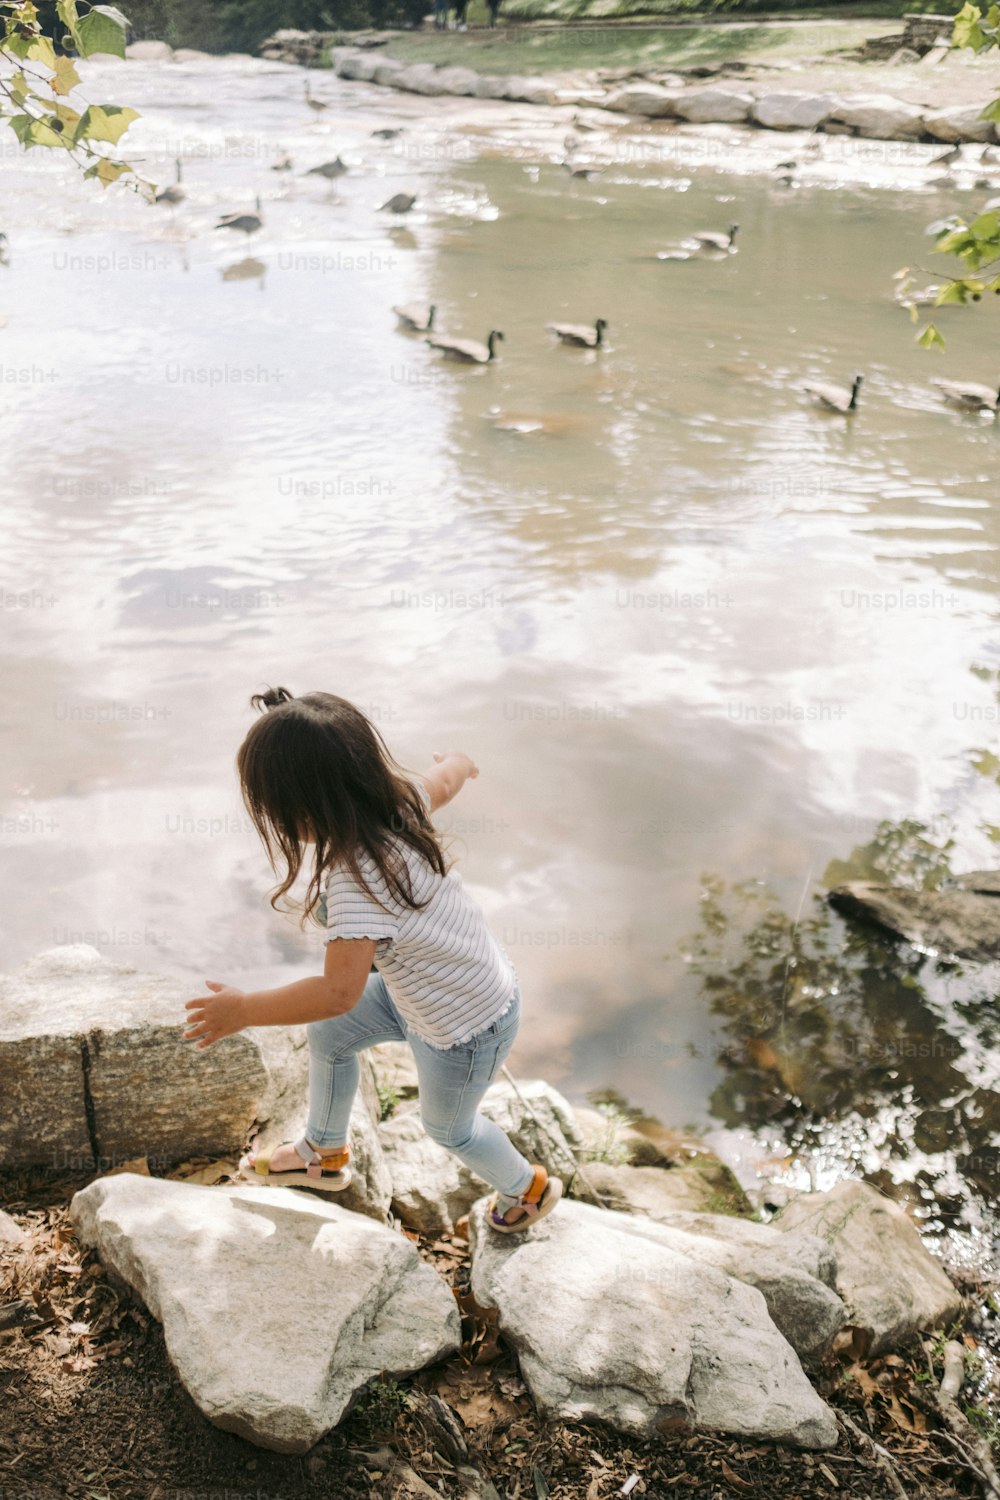 Una bambina in piedi su una roccia accanto a uno specchio d'acqua